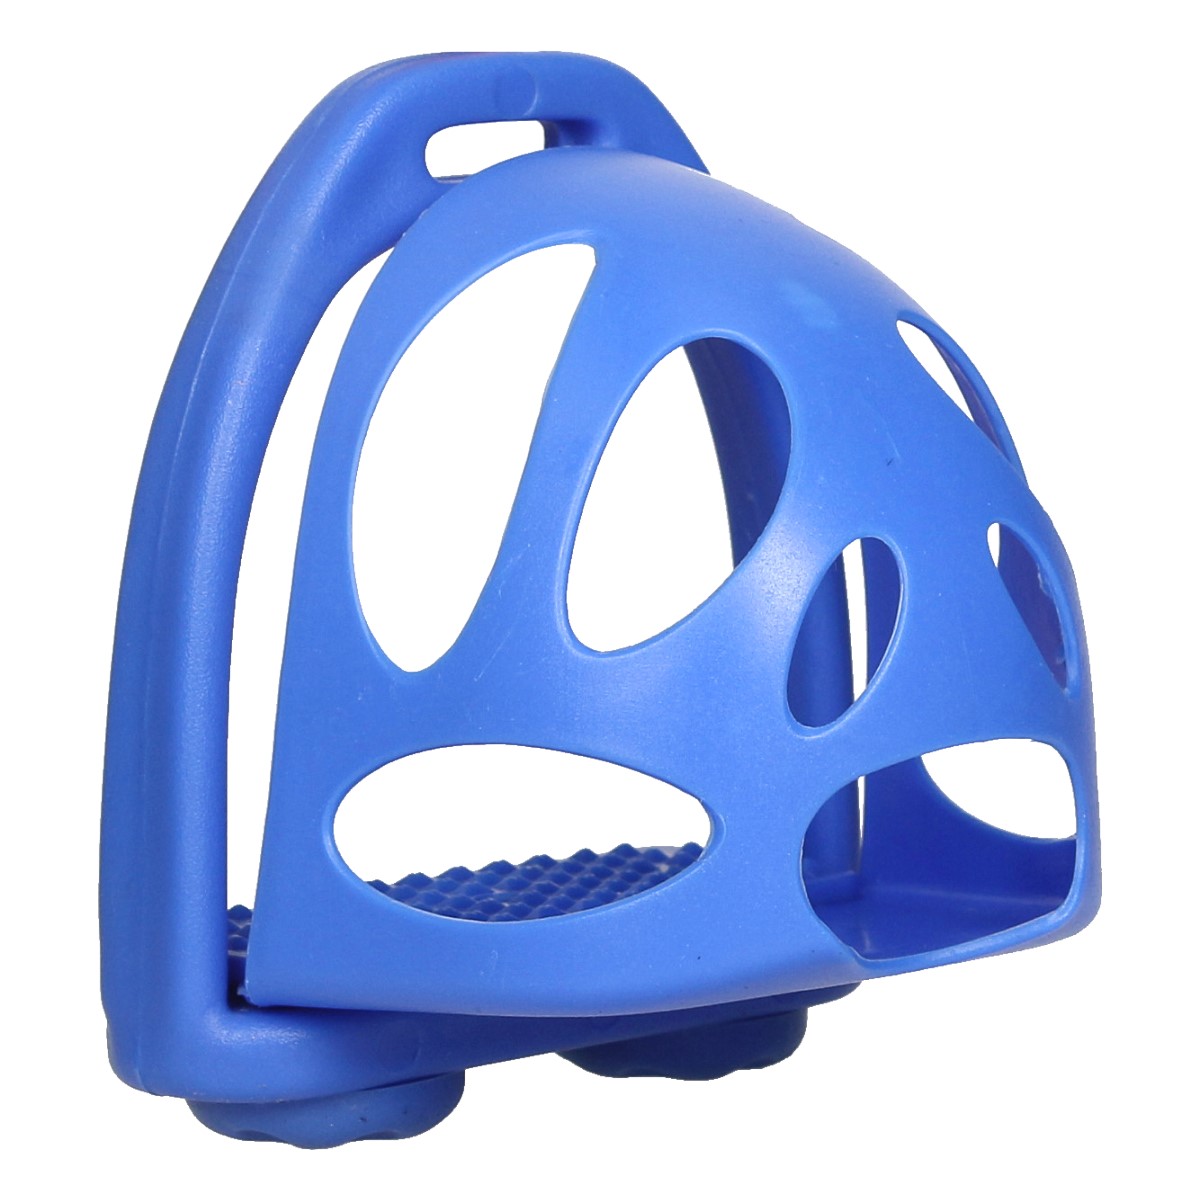 Veiligheidsbeugels Epplejeck Toe Stopper, 11,5 cm in blauw